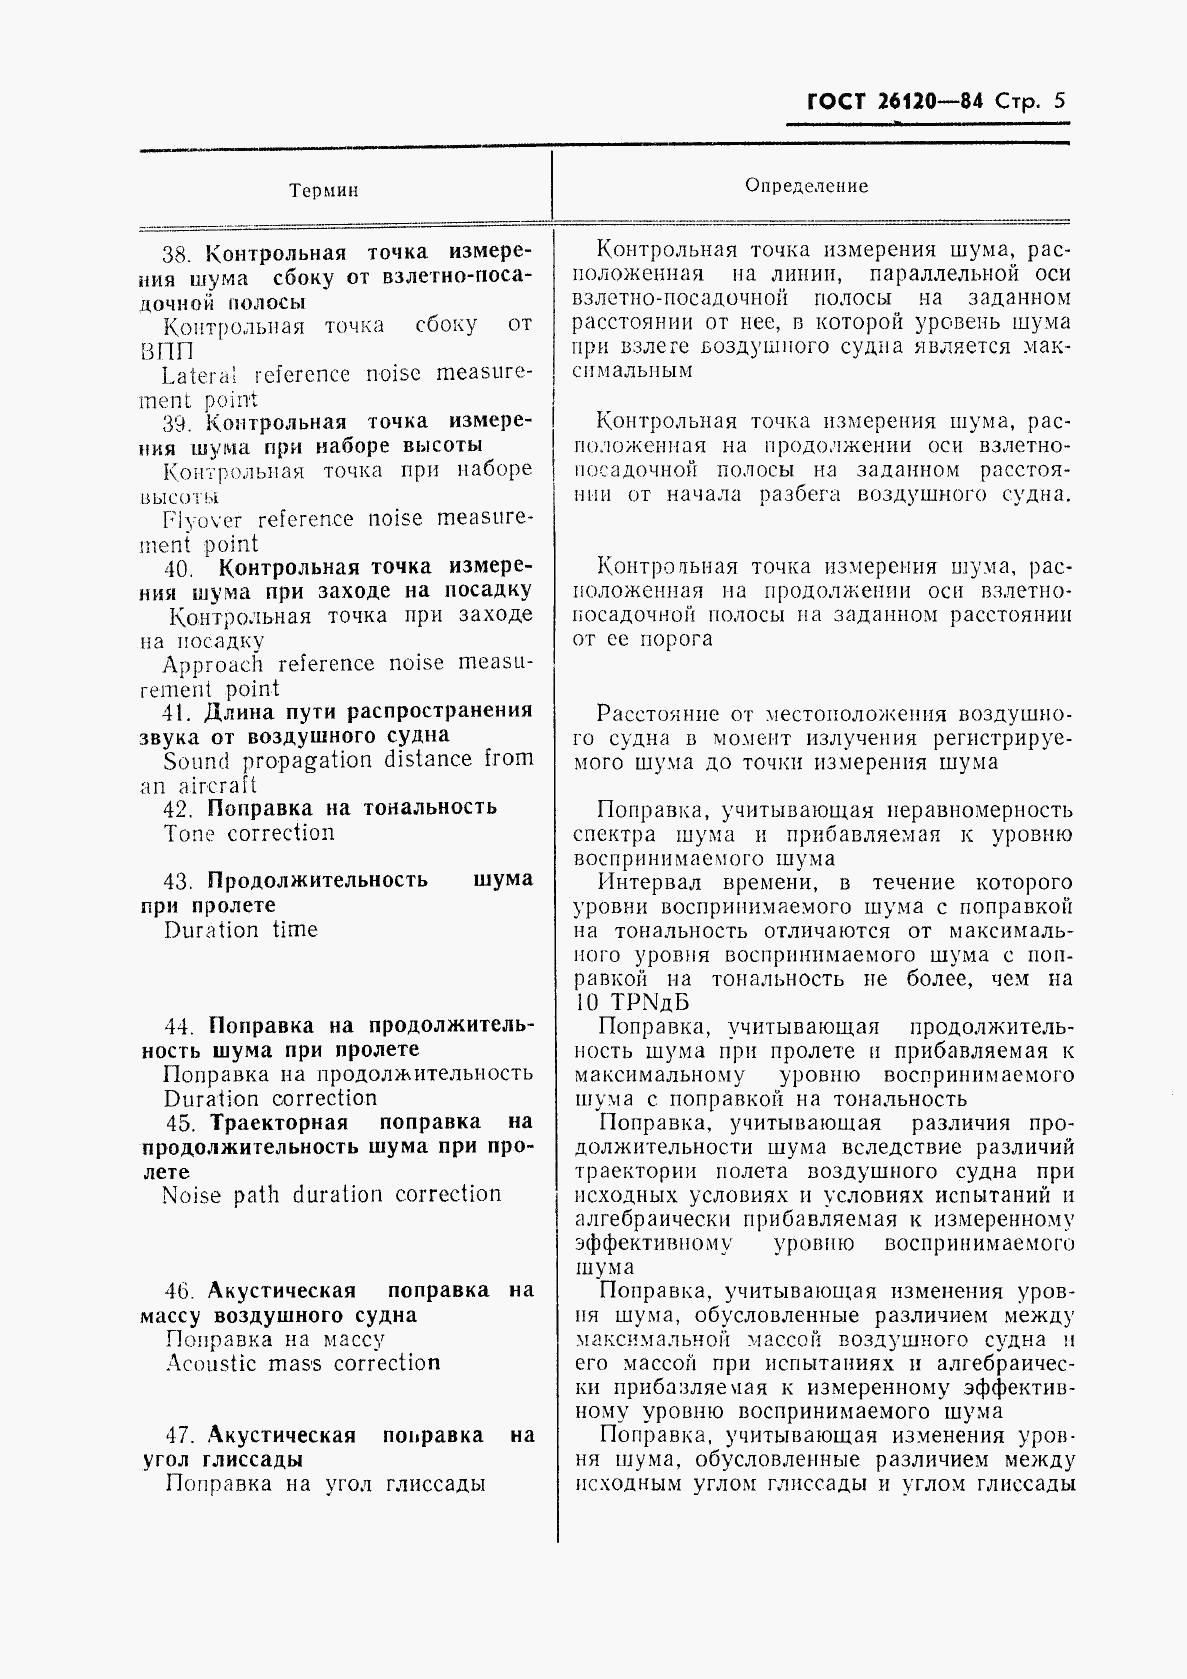 ГОСТ 26120-84, страница 6